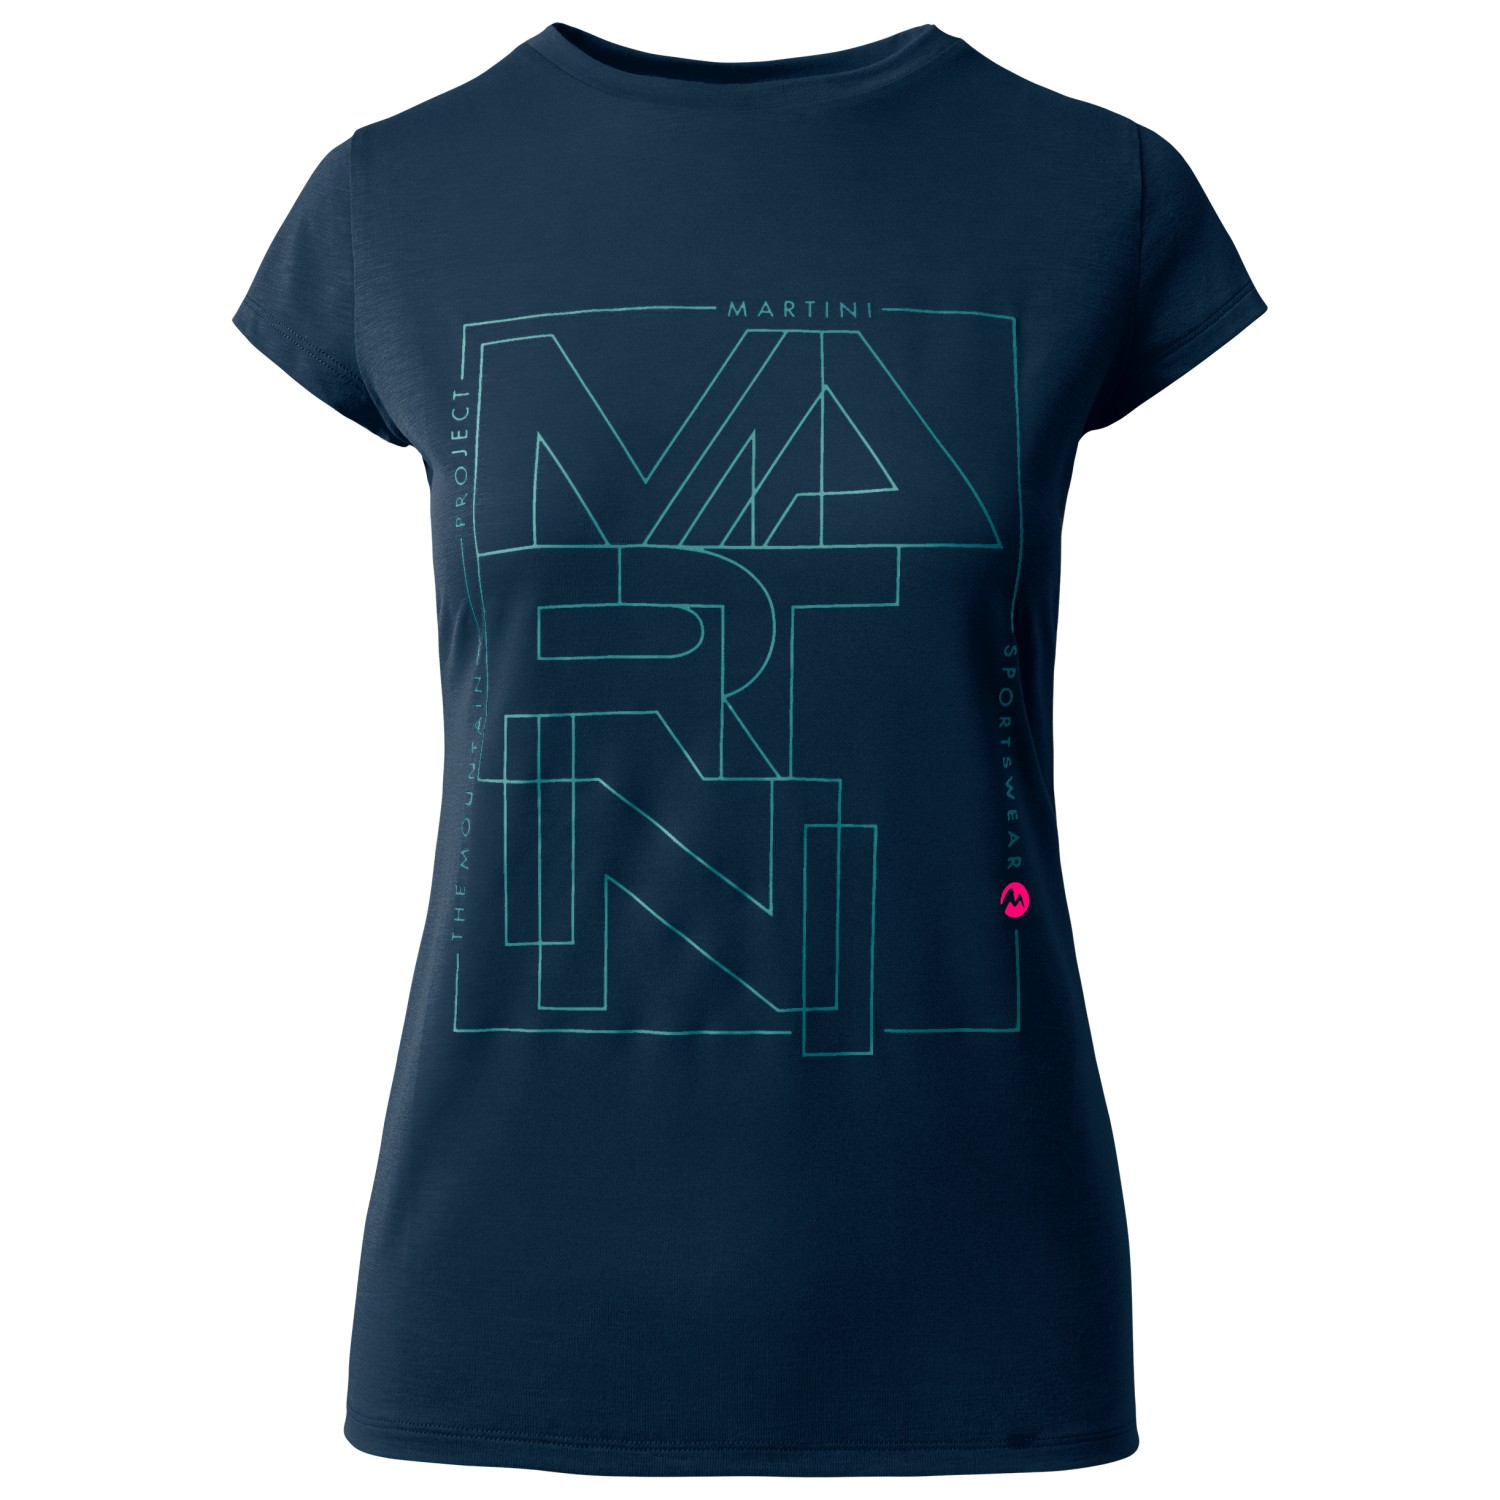 Функциональная рубашка Martini Women's Alpmate Shirt, цвет true navy